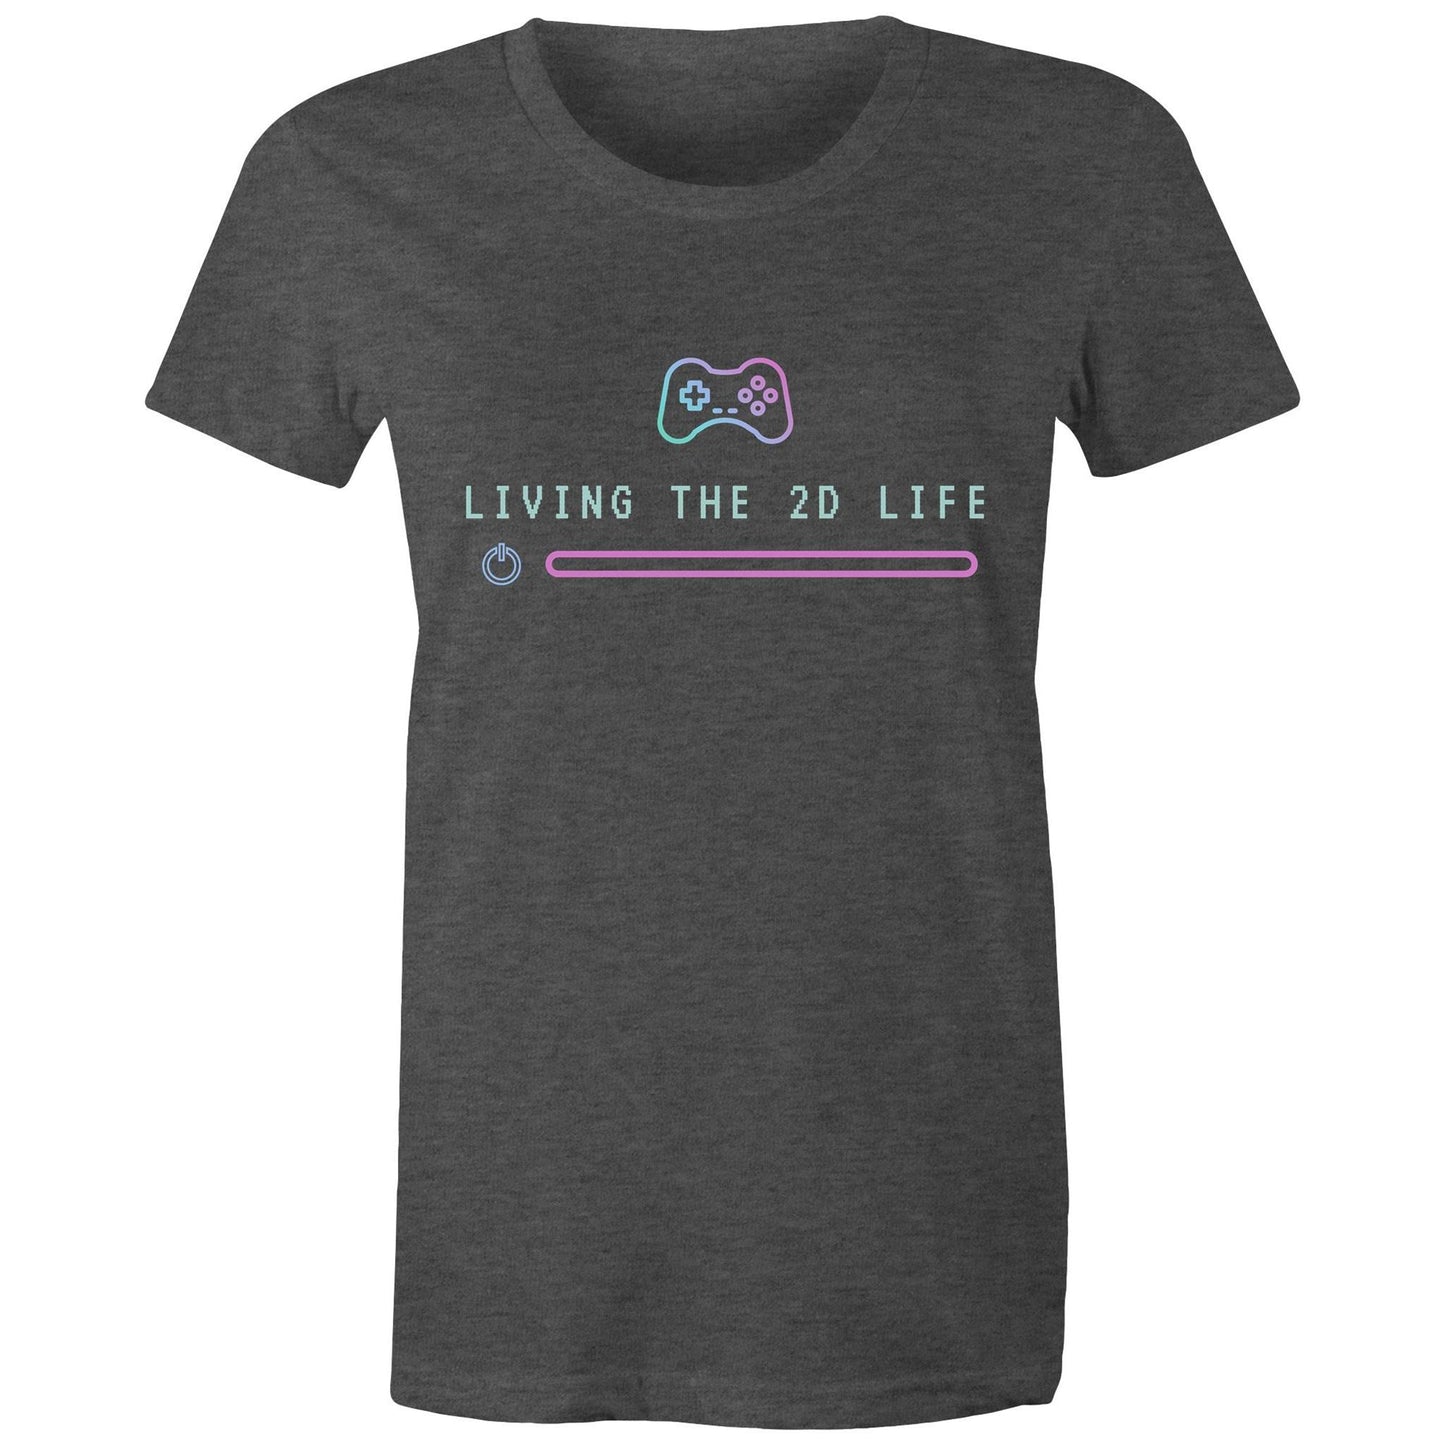 Living The 2D Life - Womens T-shirt Asphalt Marle Womens T-shirt Games Tech